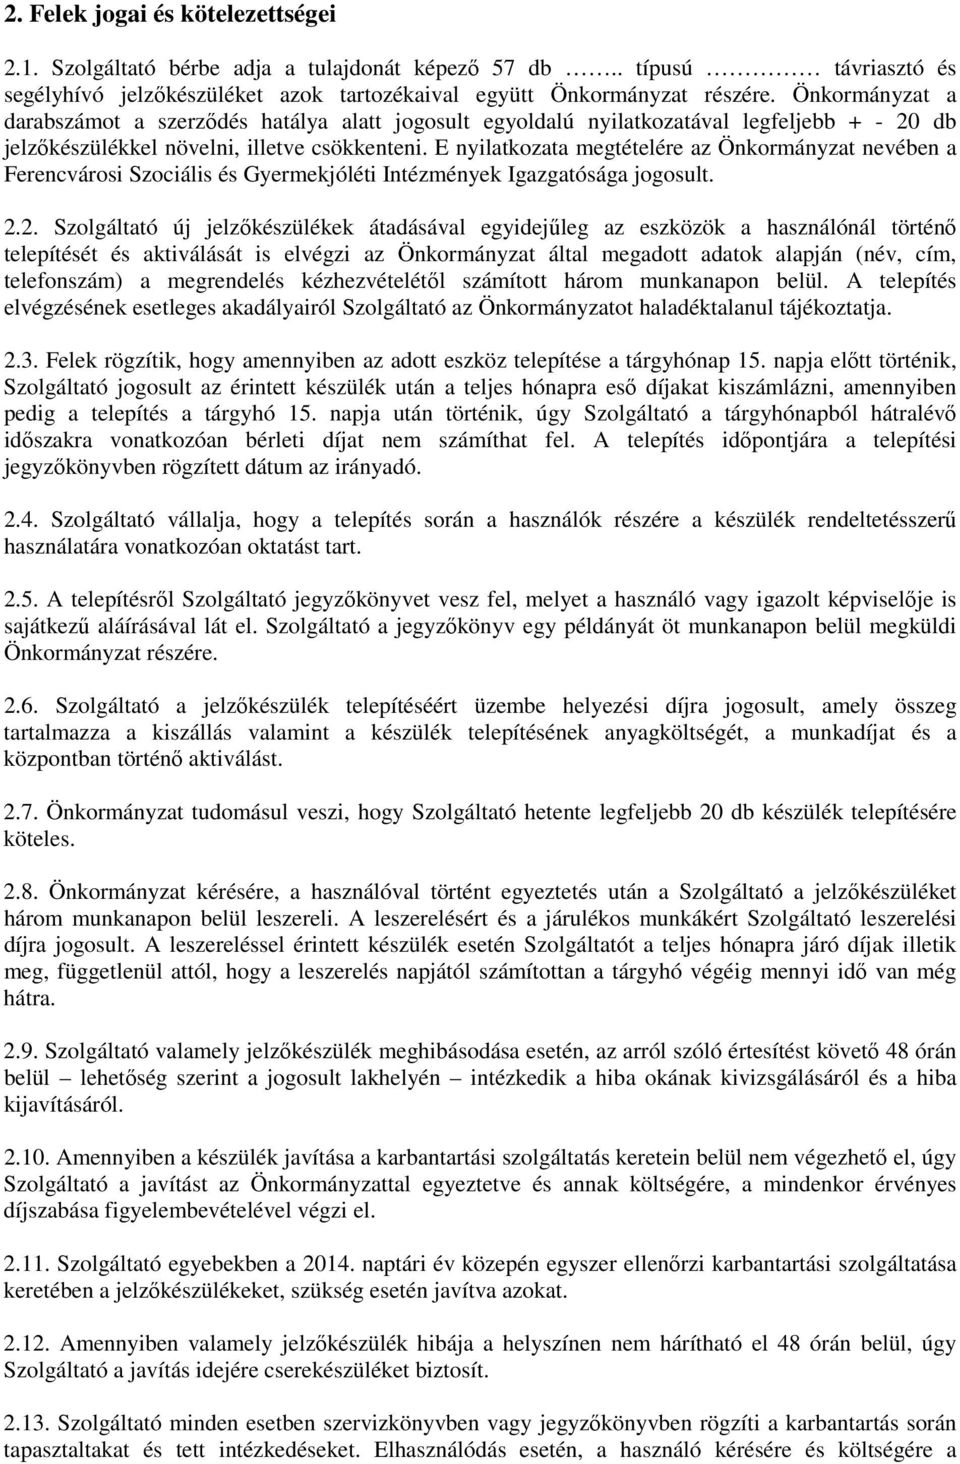 E nyilatkozata megtételére az Önkormányzat nevében a Ferencvárosi Szociális és Gyermekjóléti Intézmények Igazgatósága jogosult. 2.